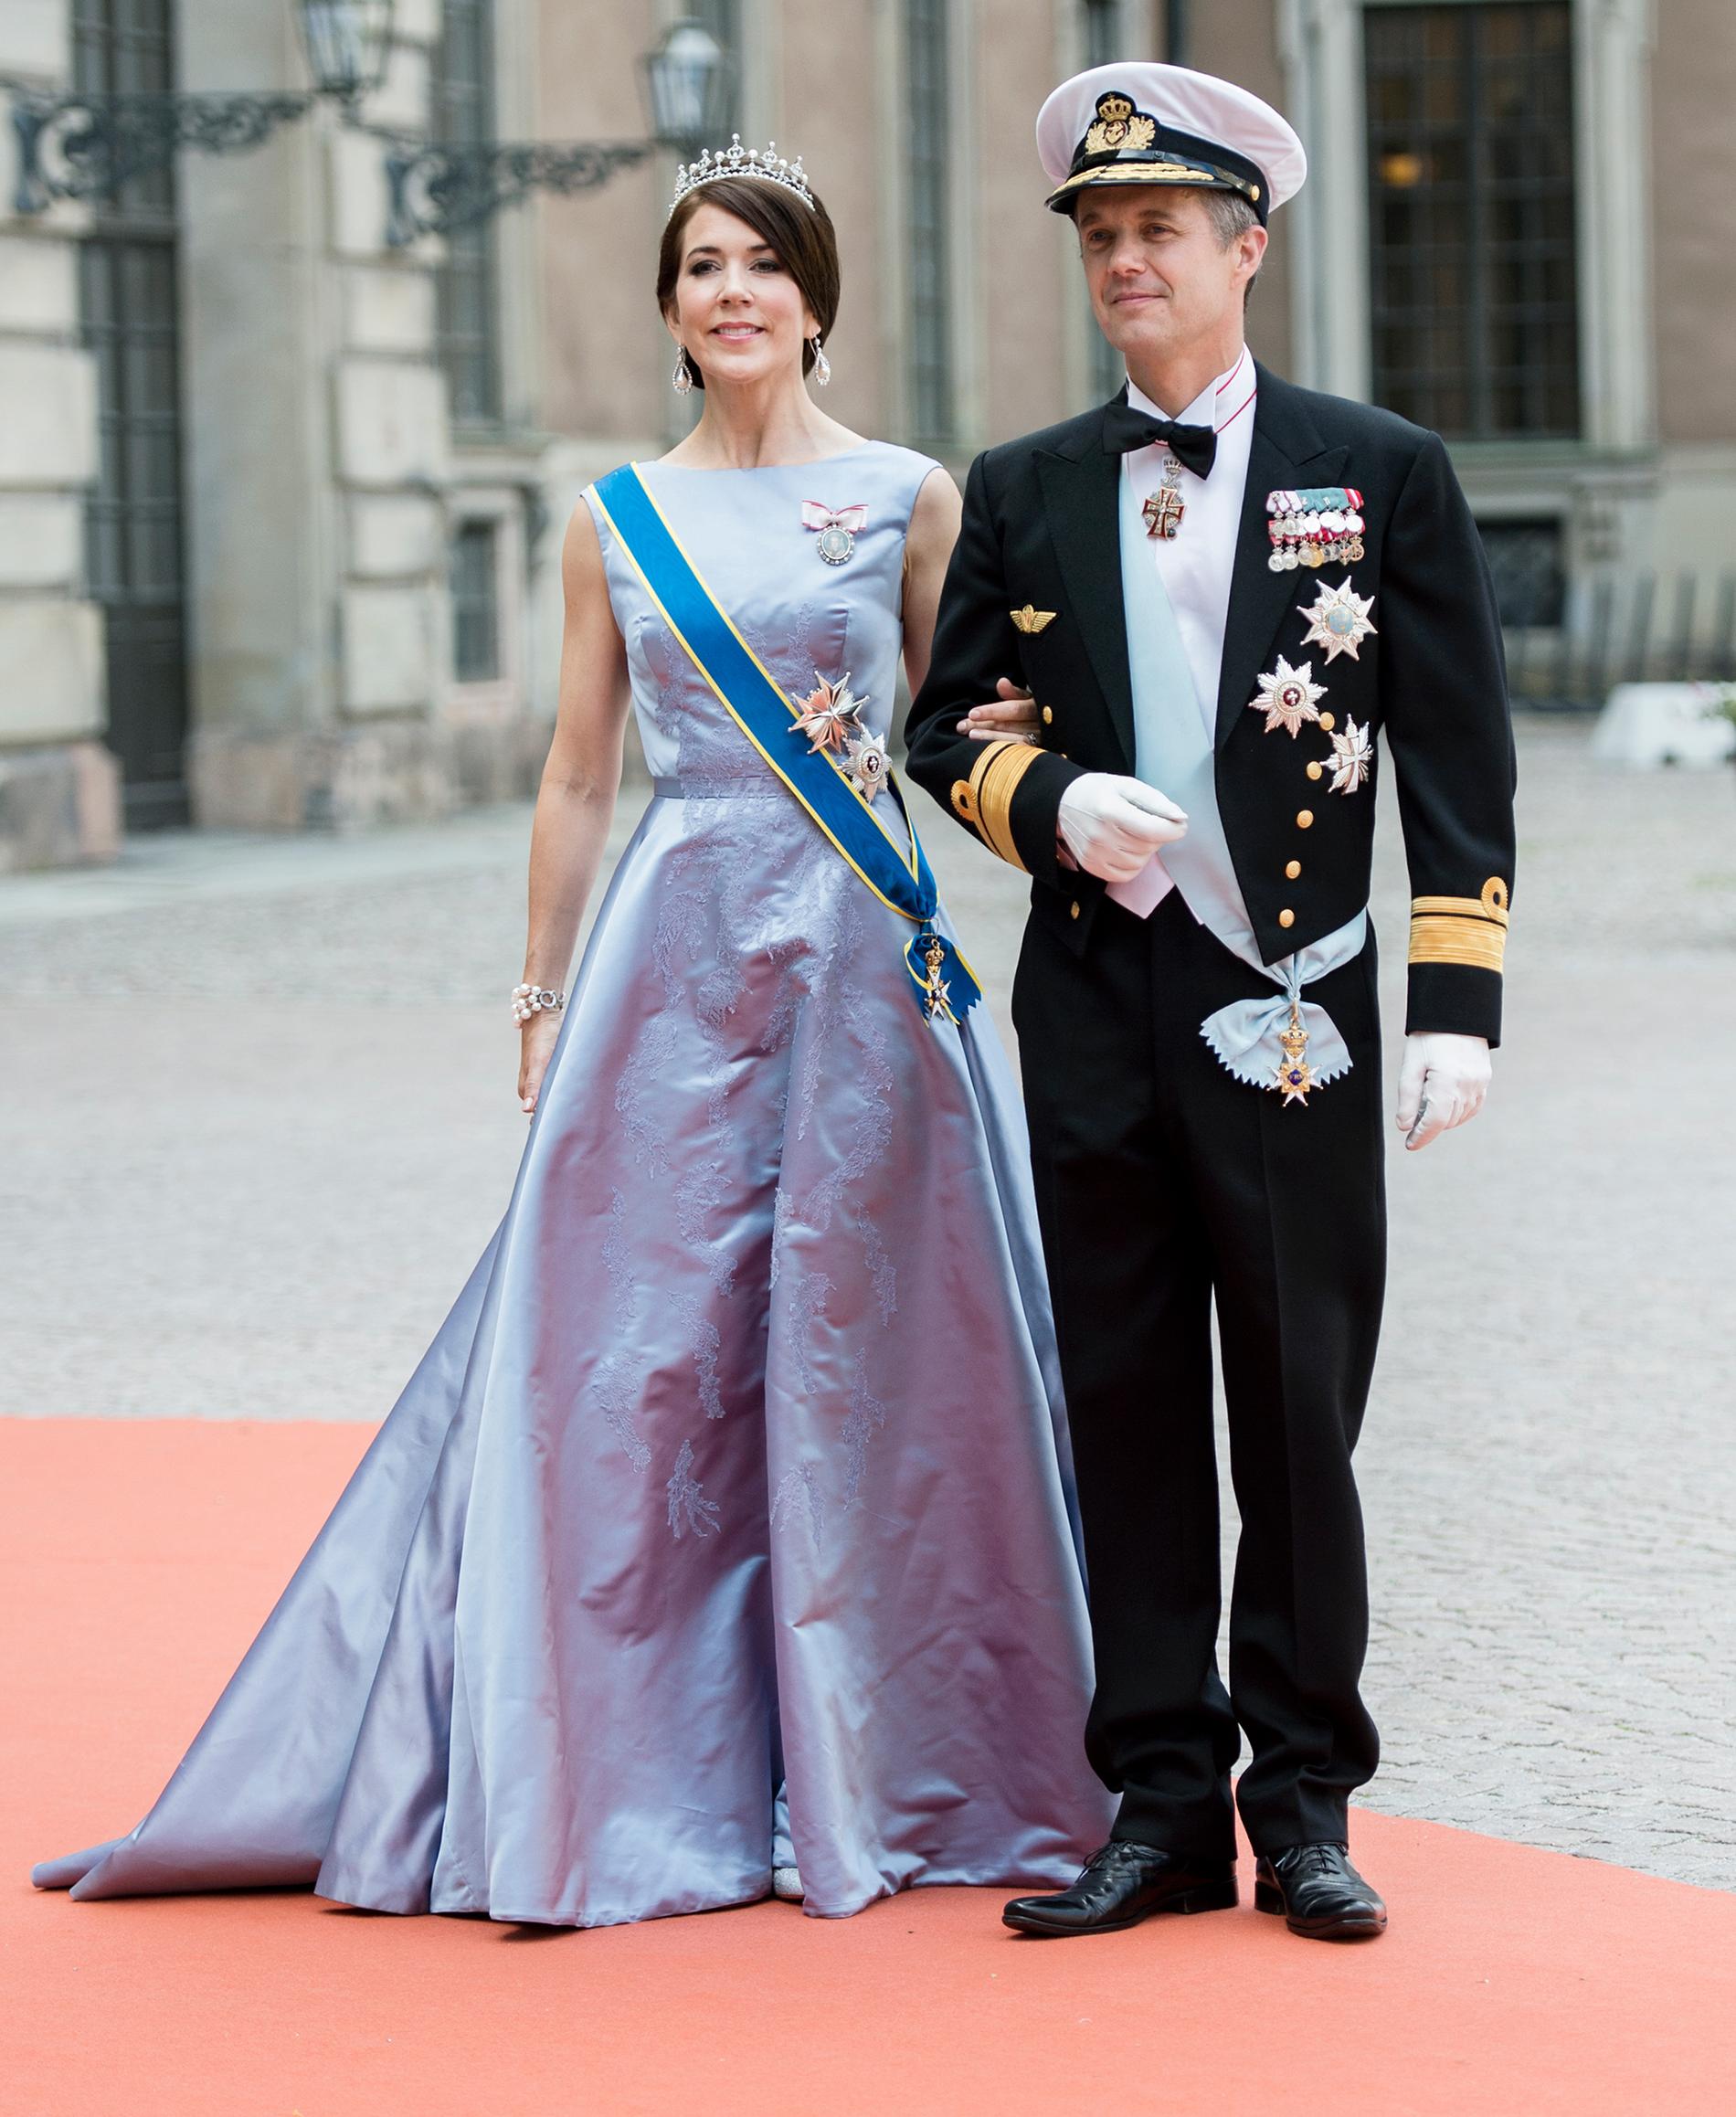 Från det danska kungahuset kommer bland andra kronprinsessan Mary och kronprins Frederik.